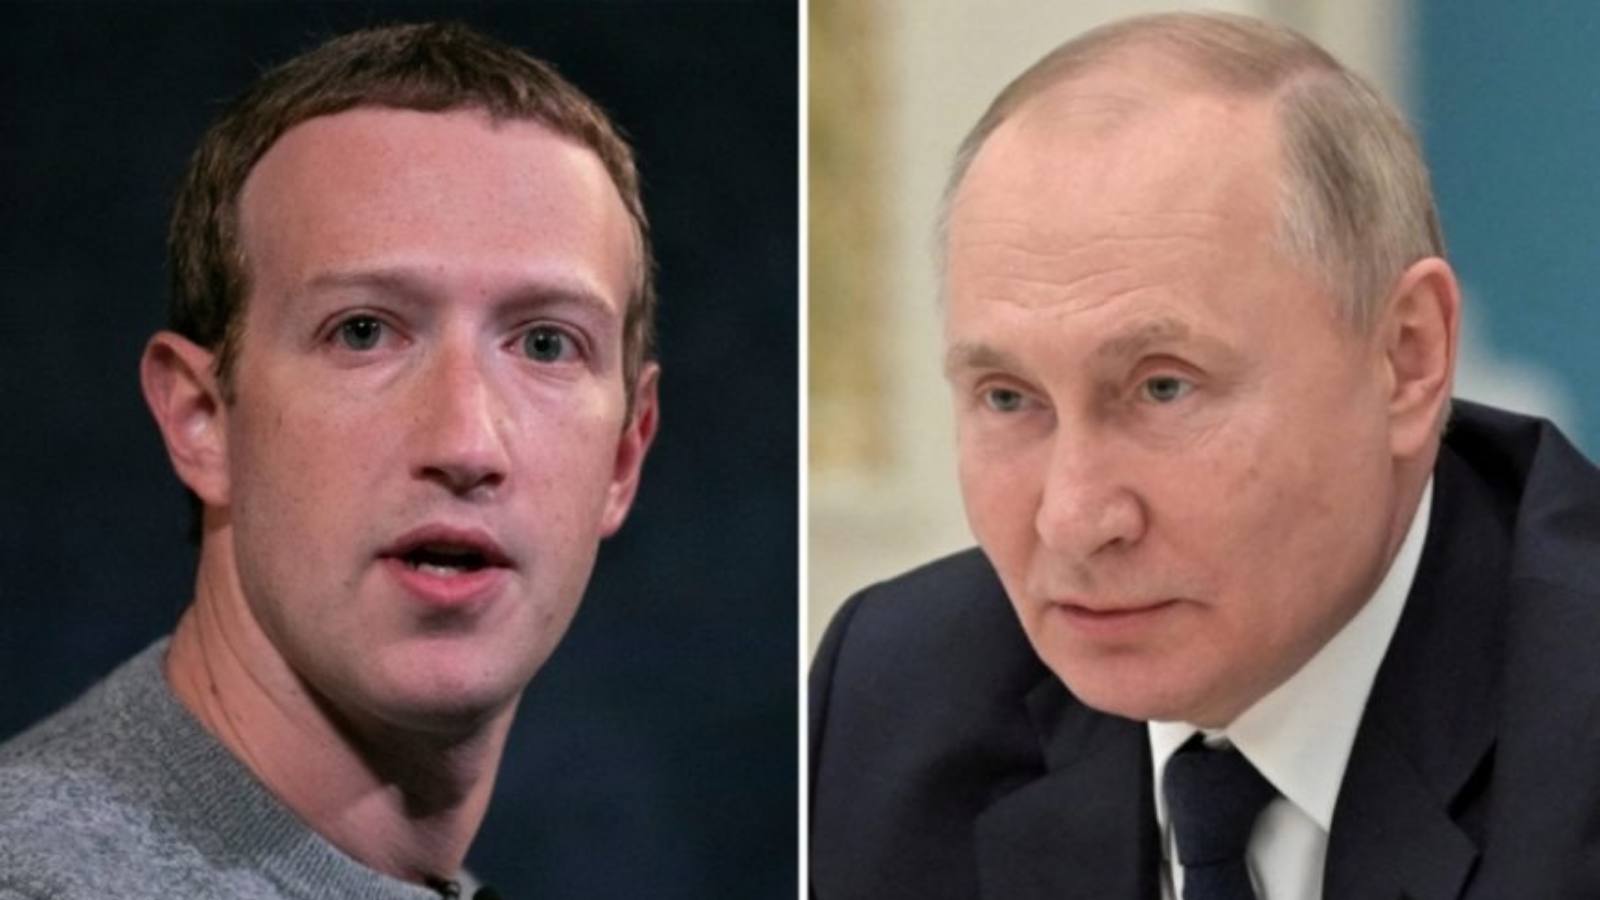 Zuckerberg And Putin